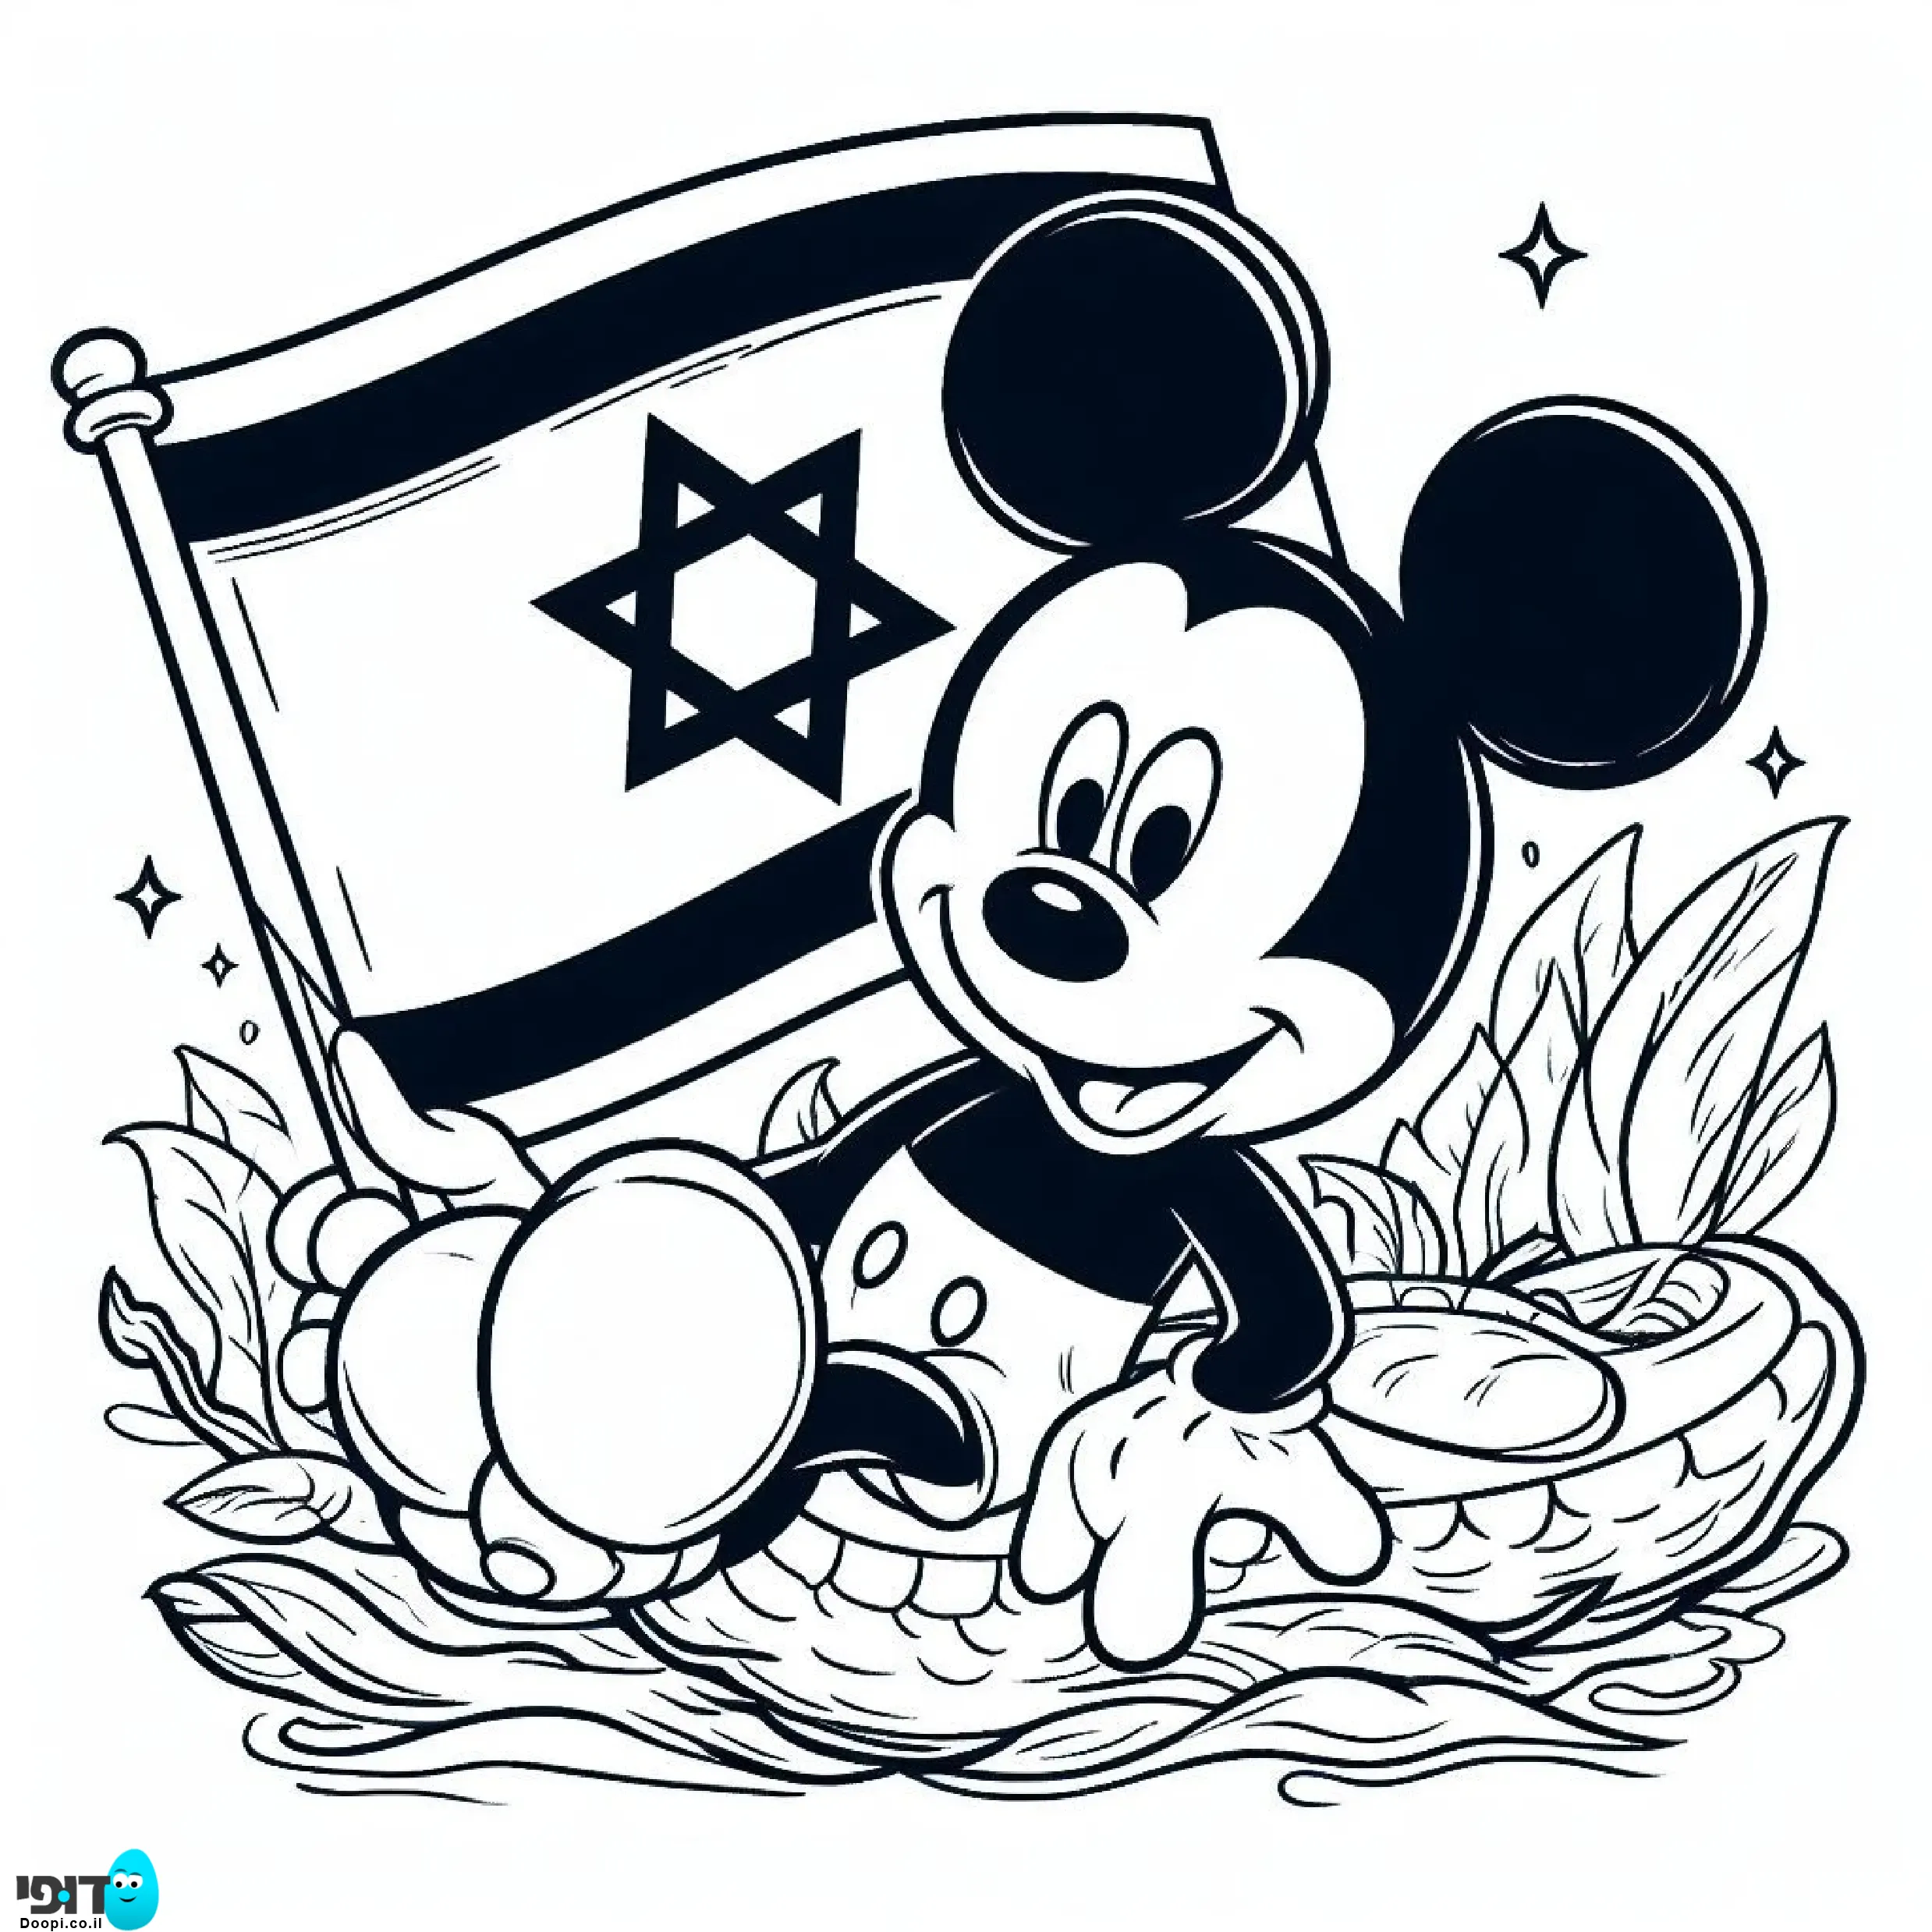 דף צביעה מיקימאוס עם דגל ישראל